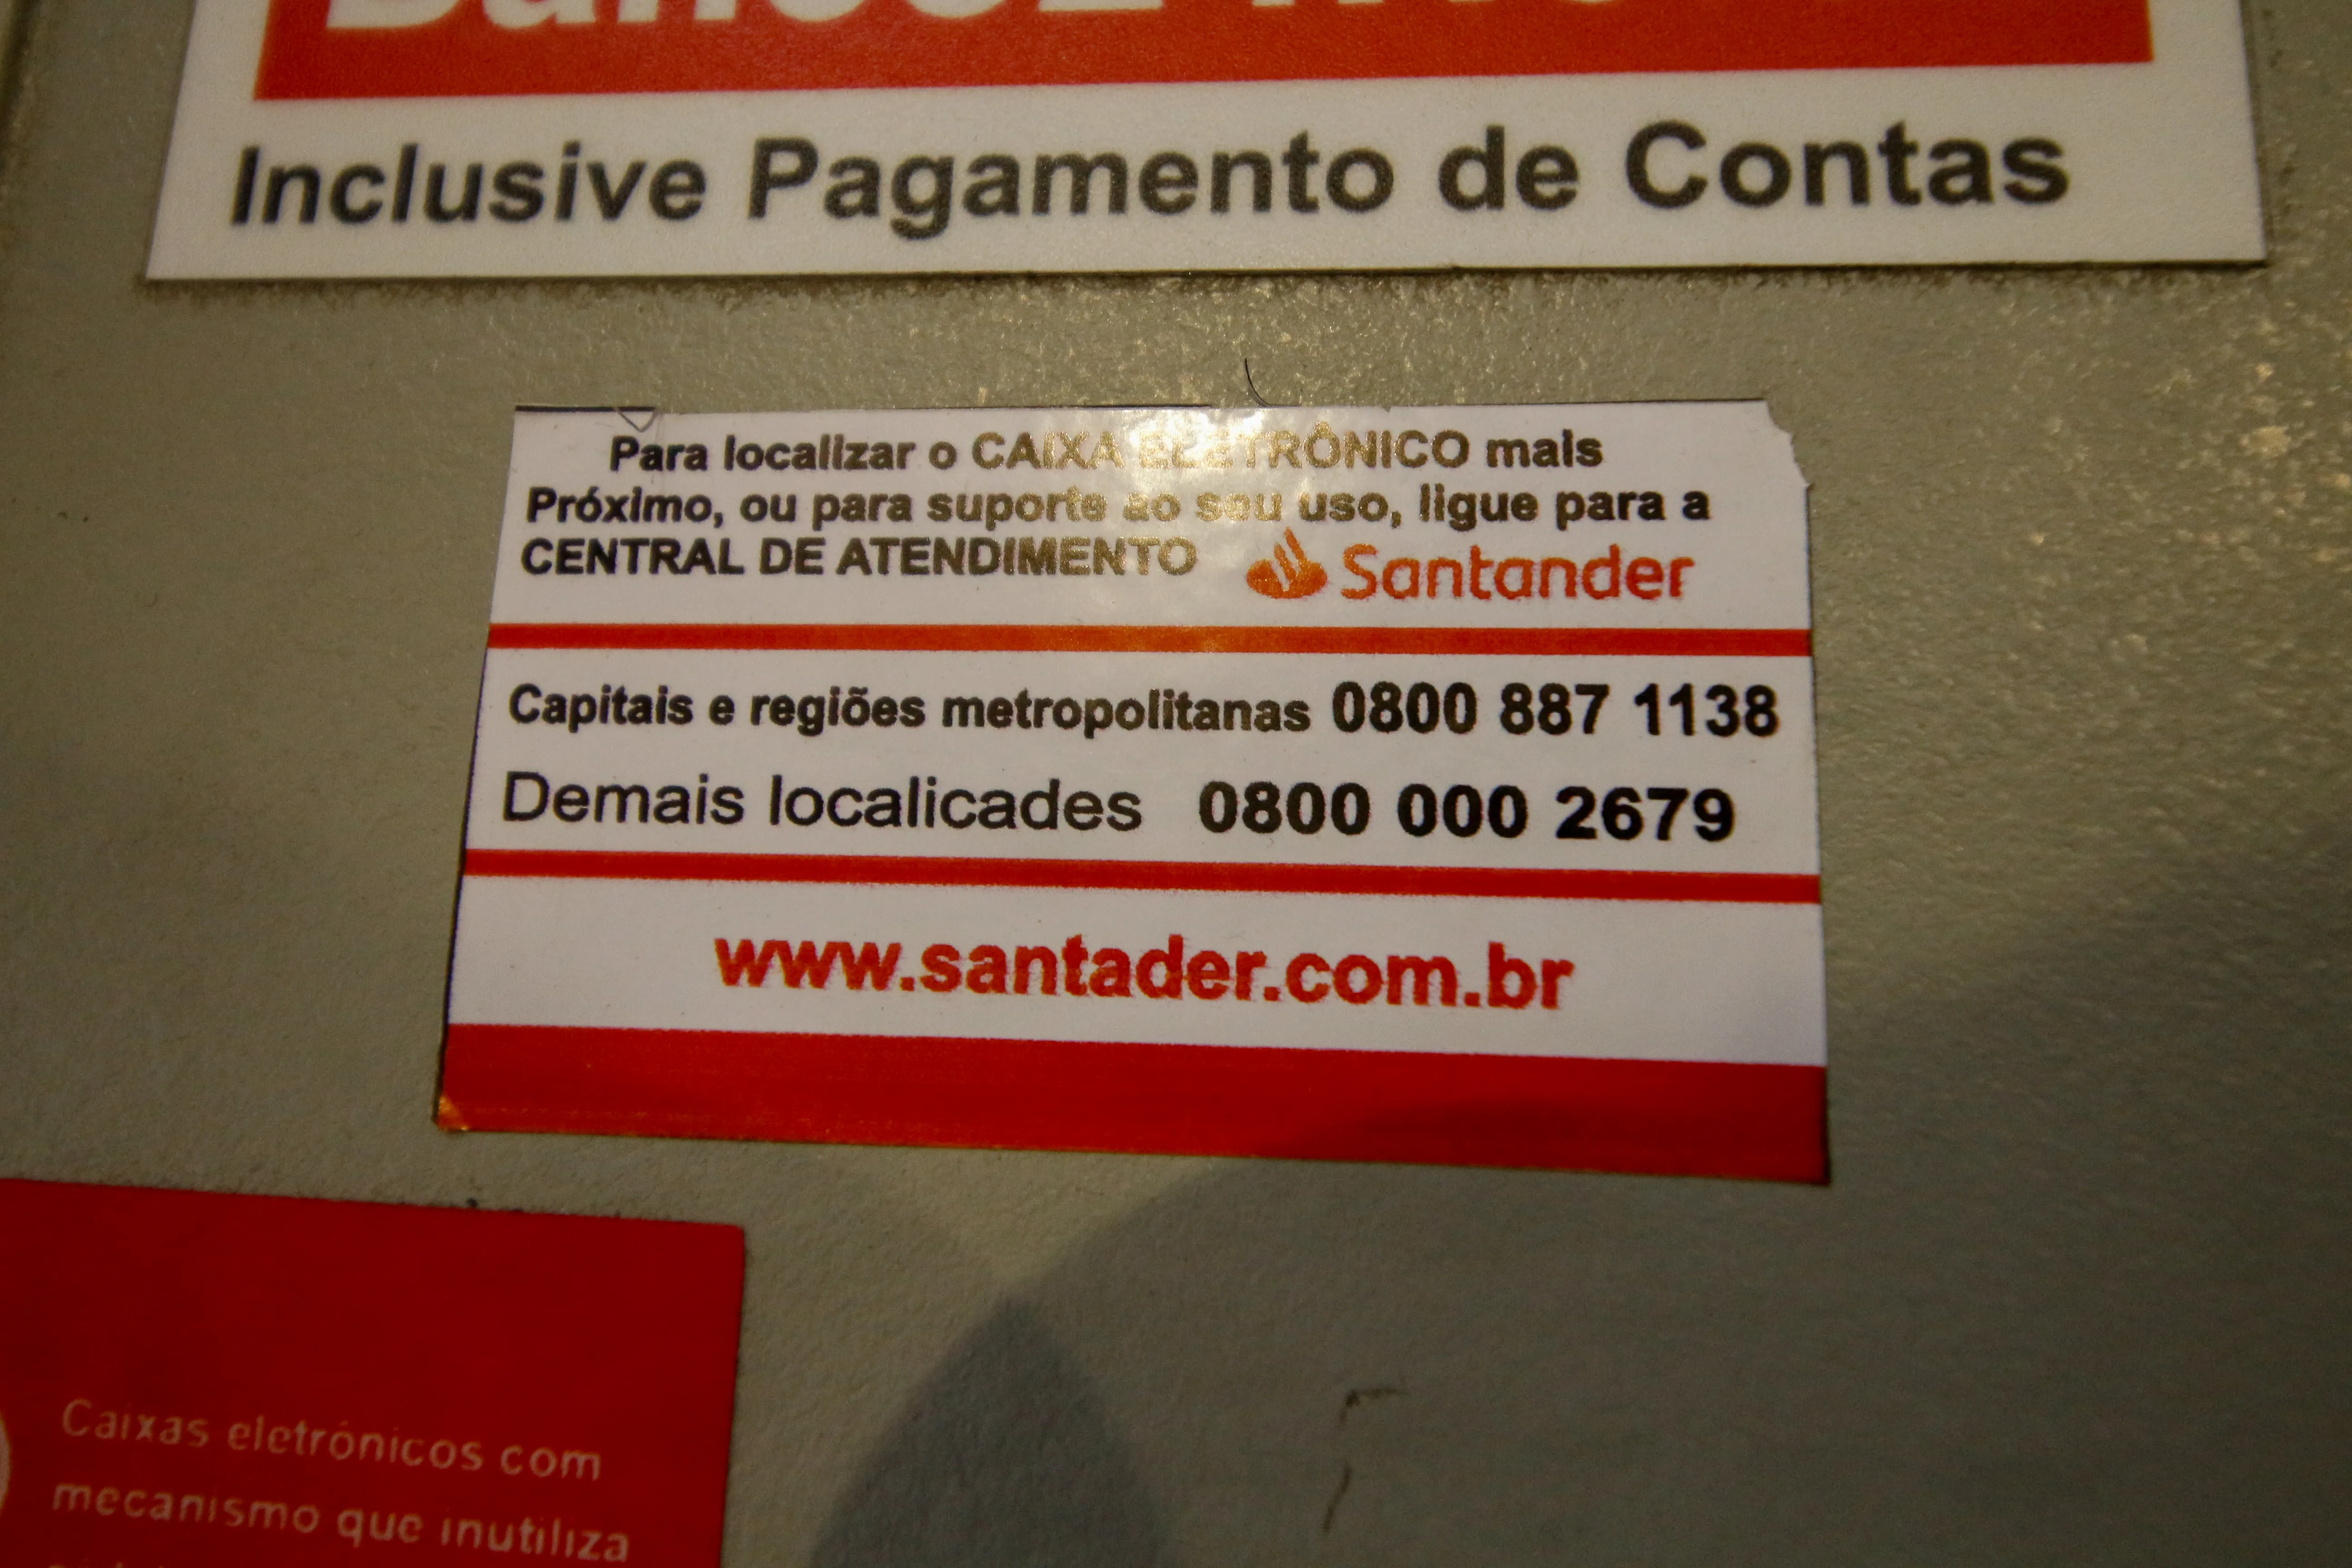 Bilhete aparece com diversos erros de português, inclusive no nome do banco